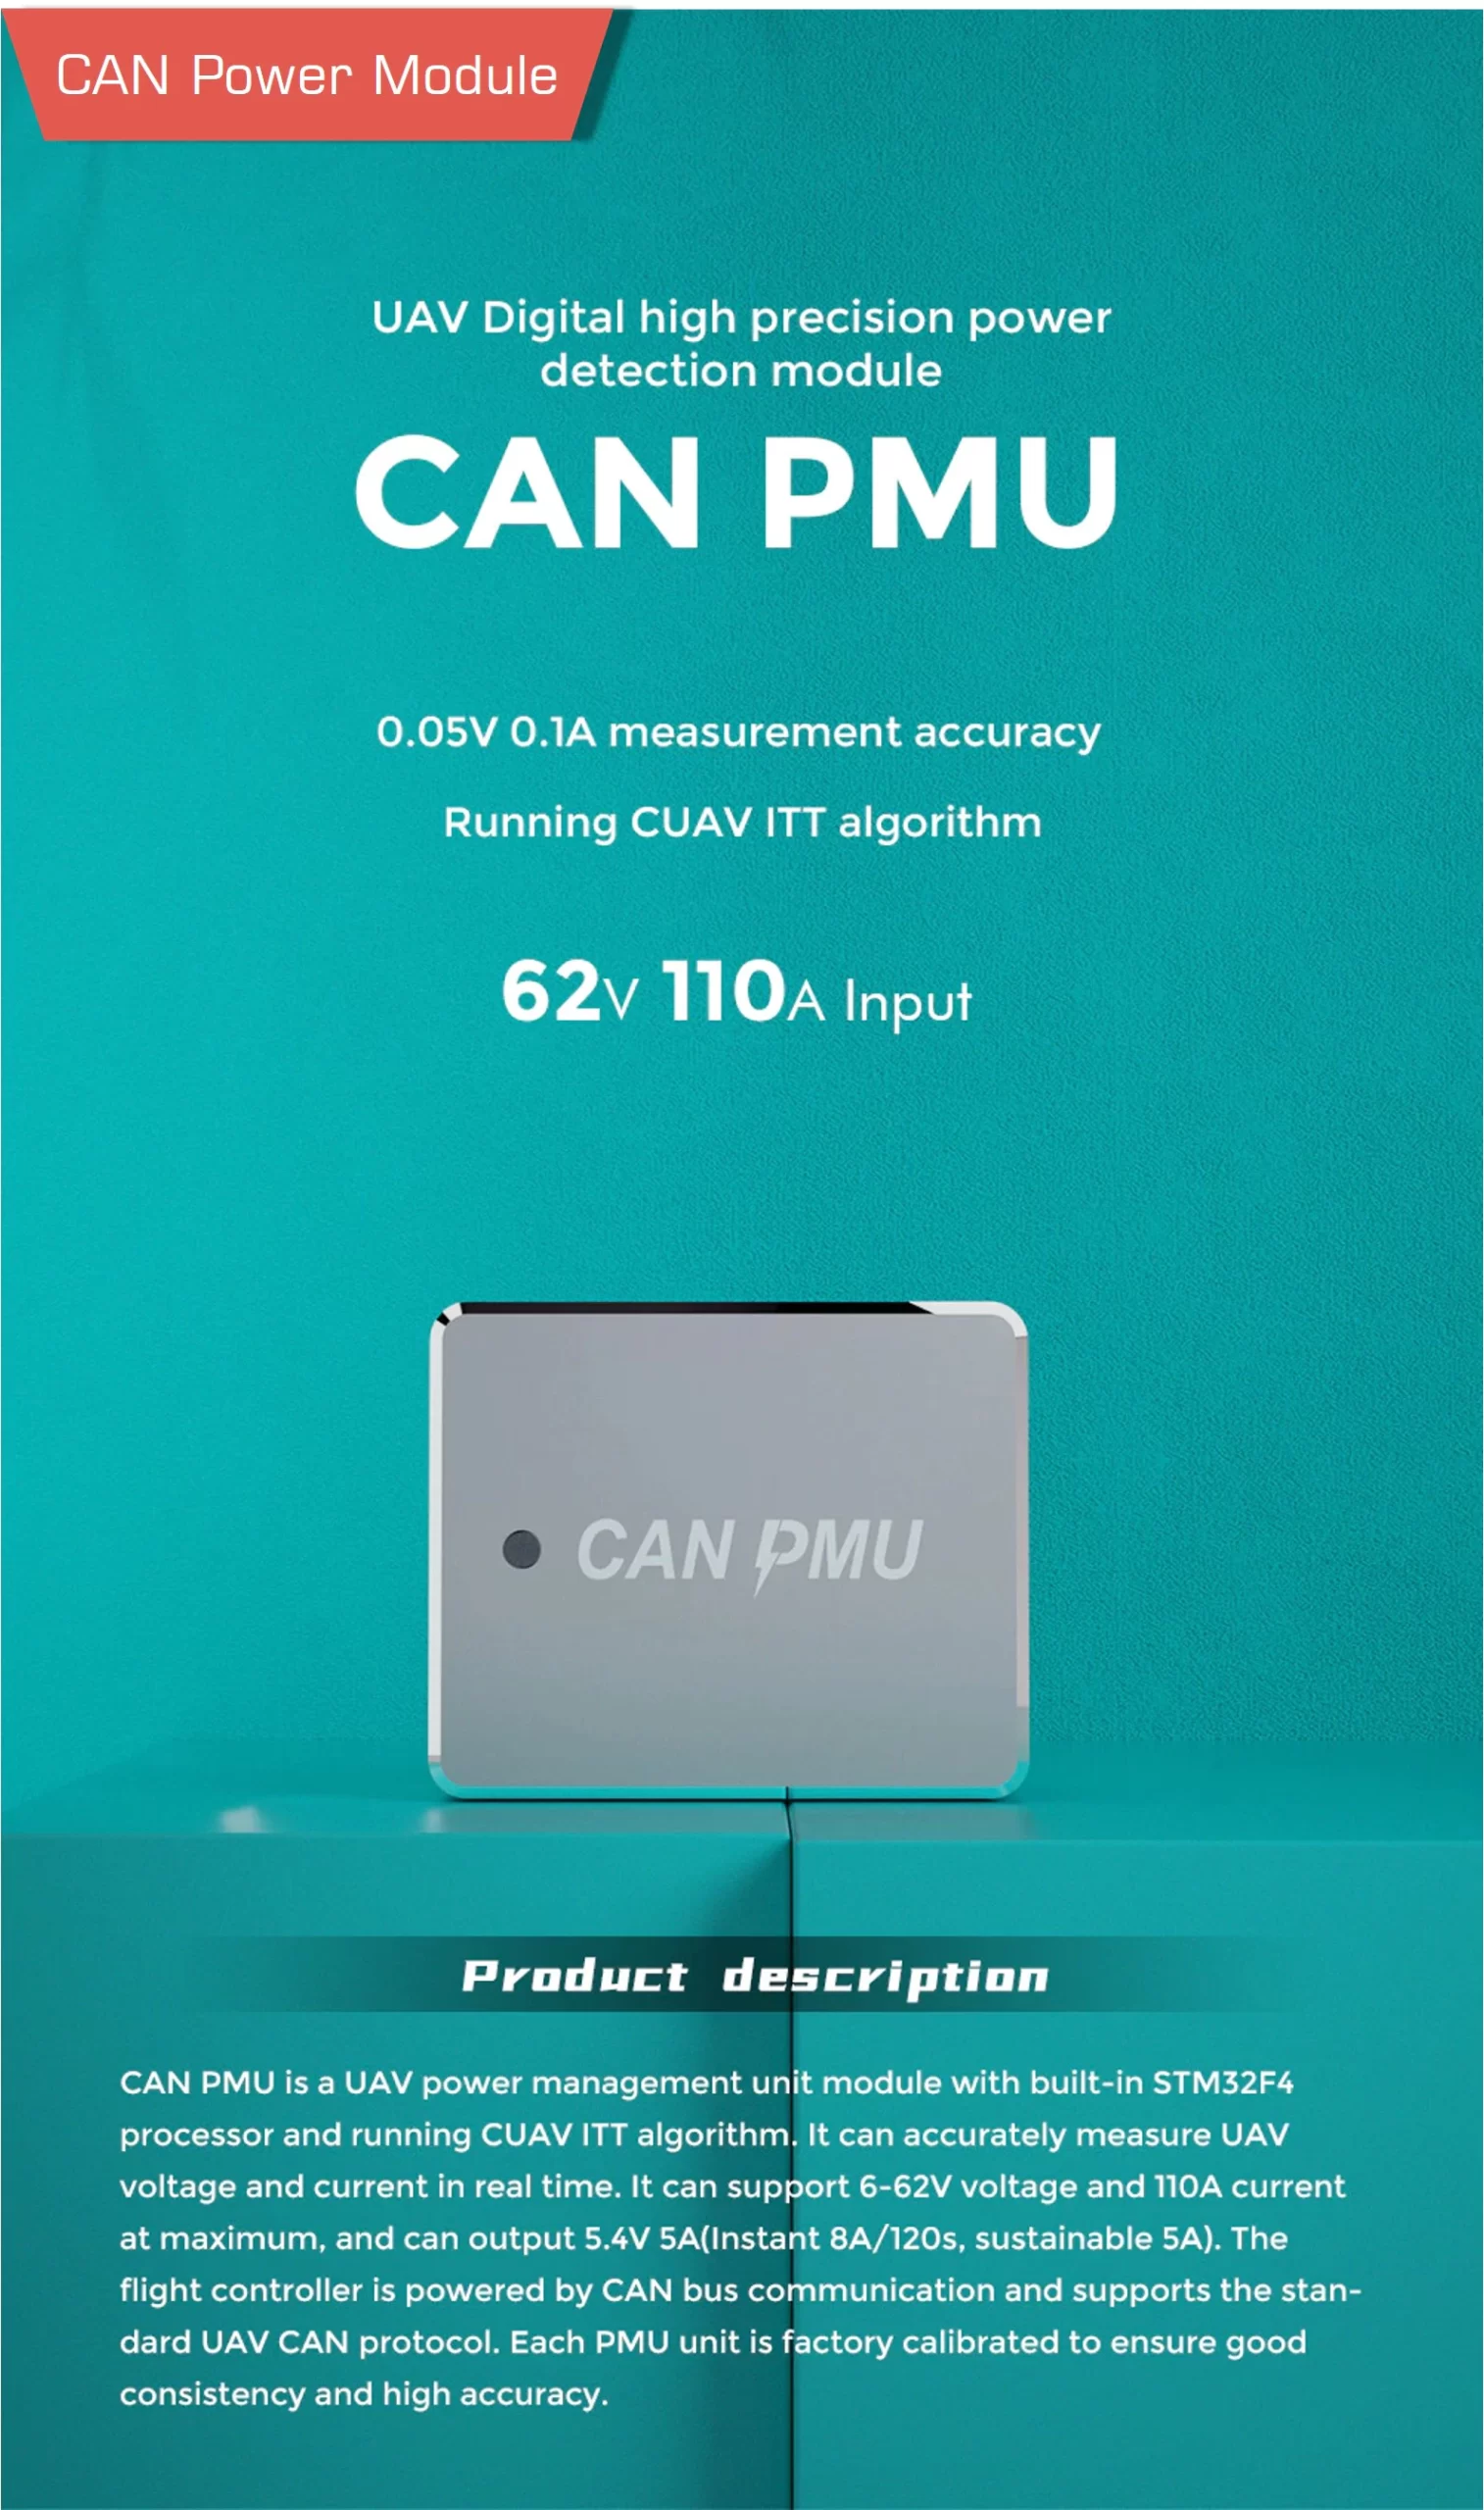 Cuav can pmu 9 scaled - cuav can pmu, pixhawk power module, pixhawk current sensor, pixhawk voltage sensor, can pmu - motionew - 6